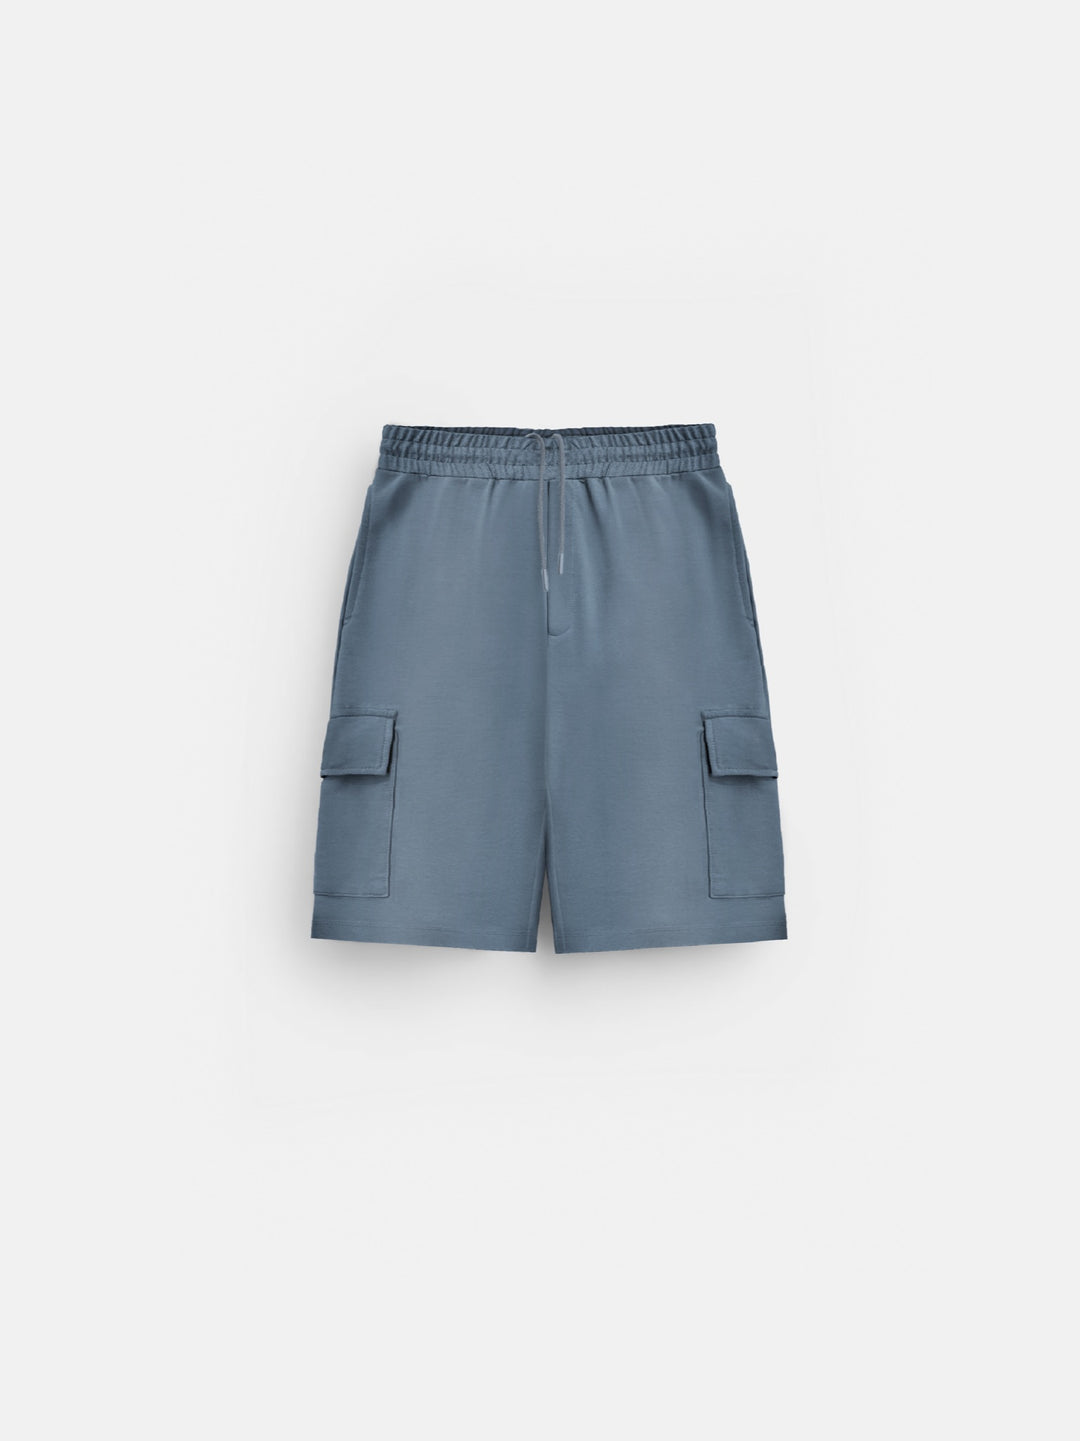 Loose Fit Pocket Shorts - Blue